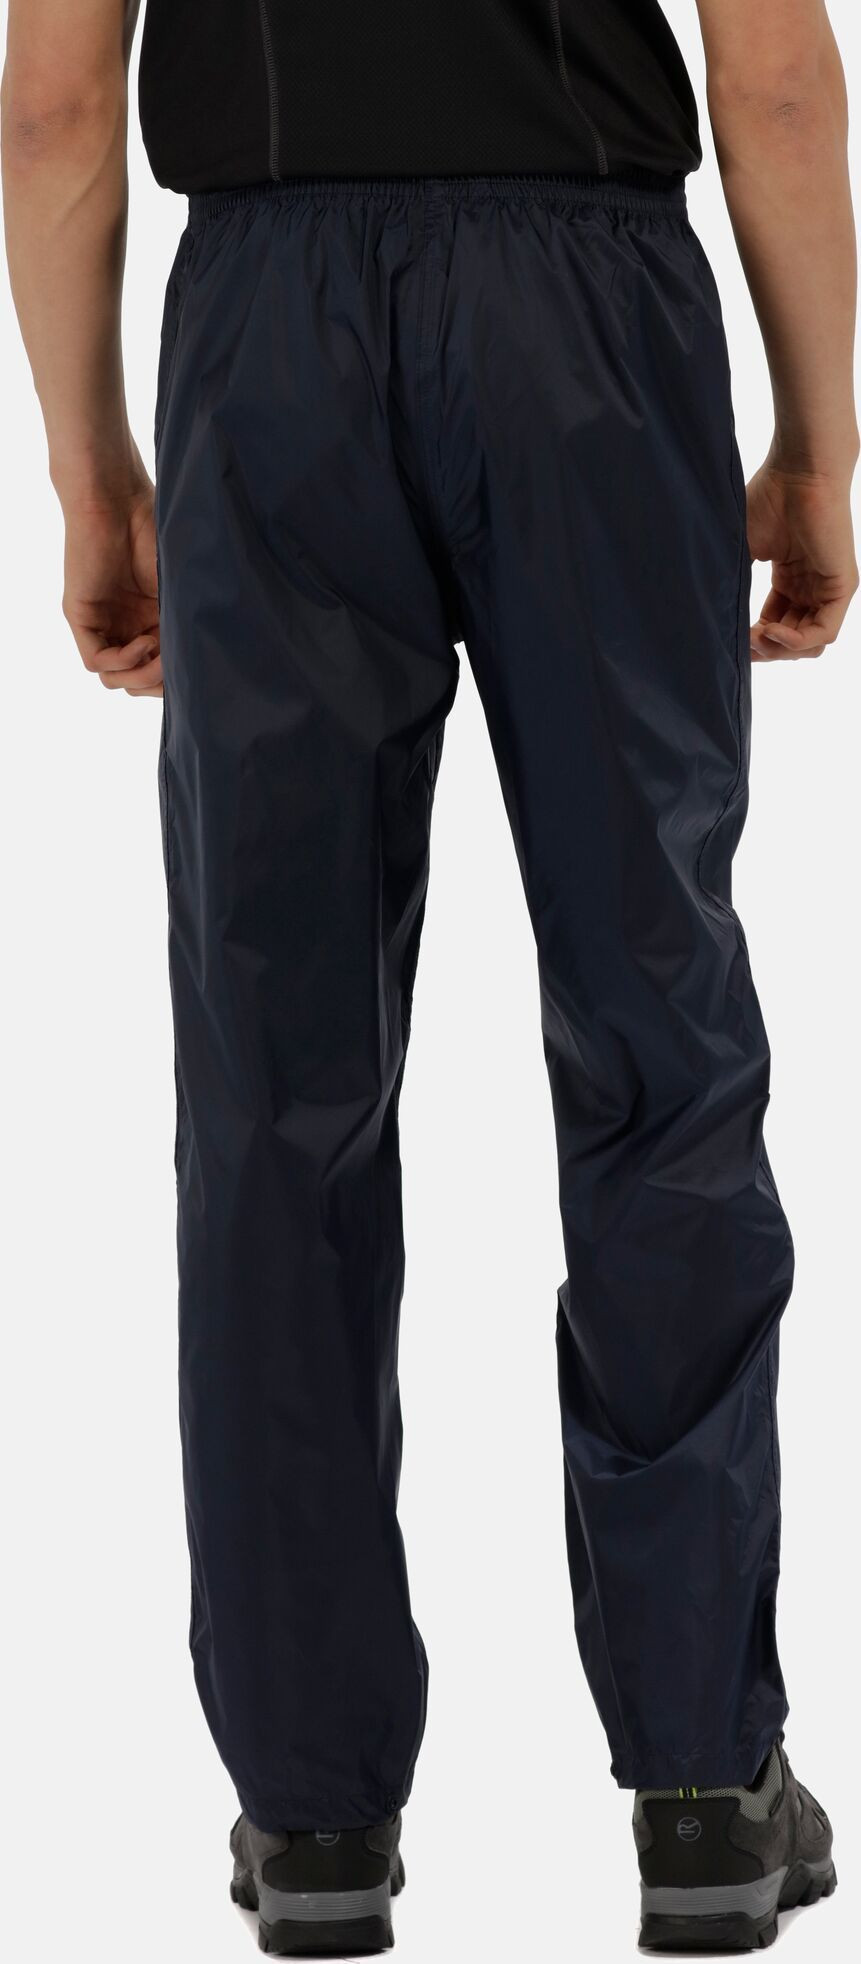 Pánské kalhoty Pack It Tmavě modré S model 18684651 - Regatta